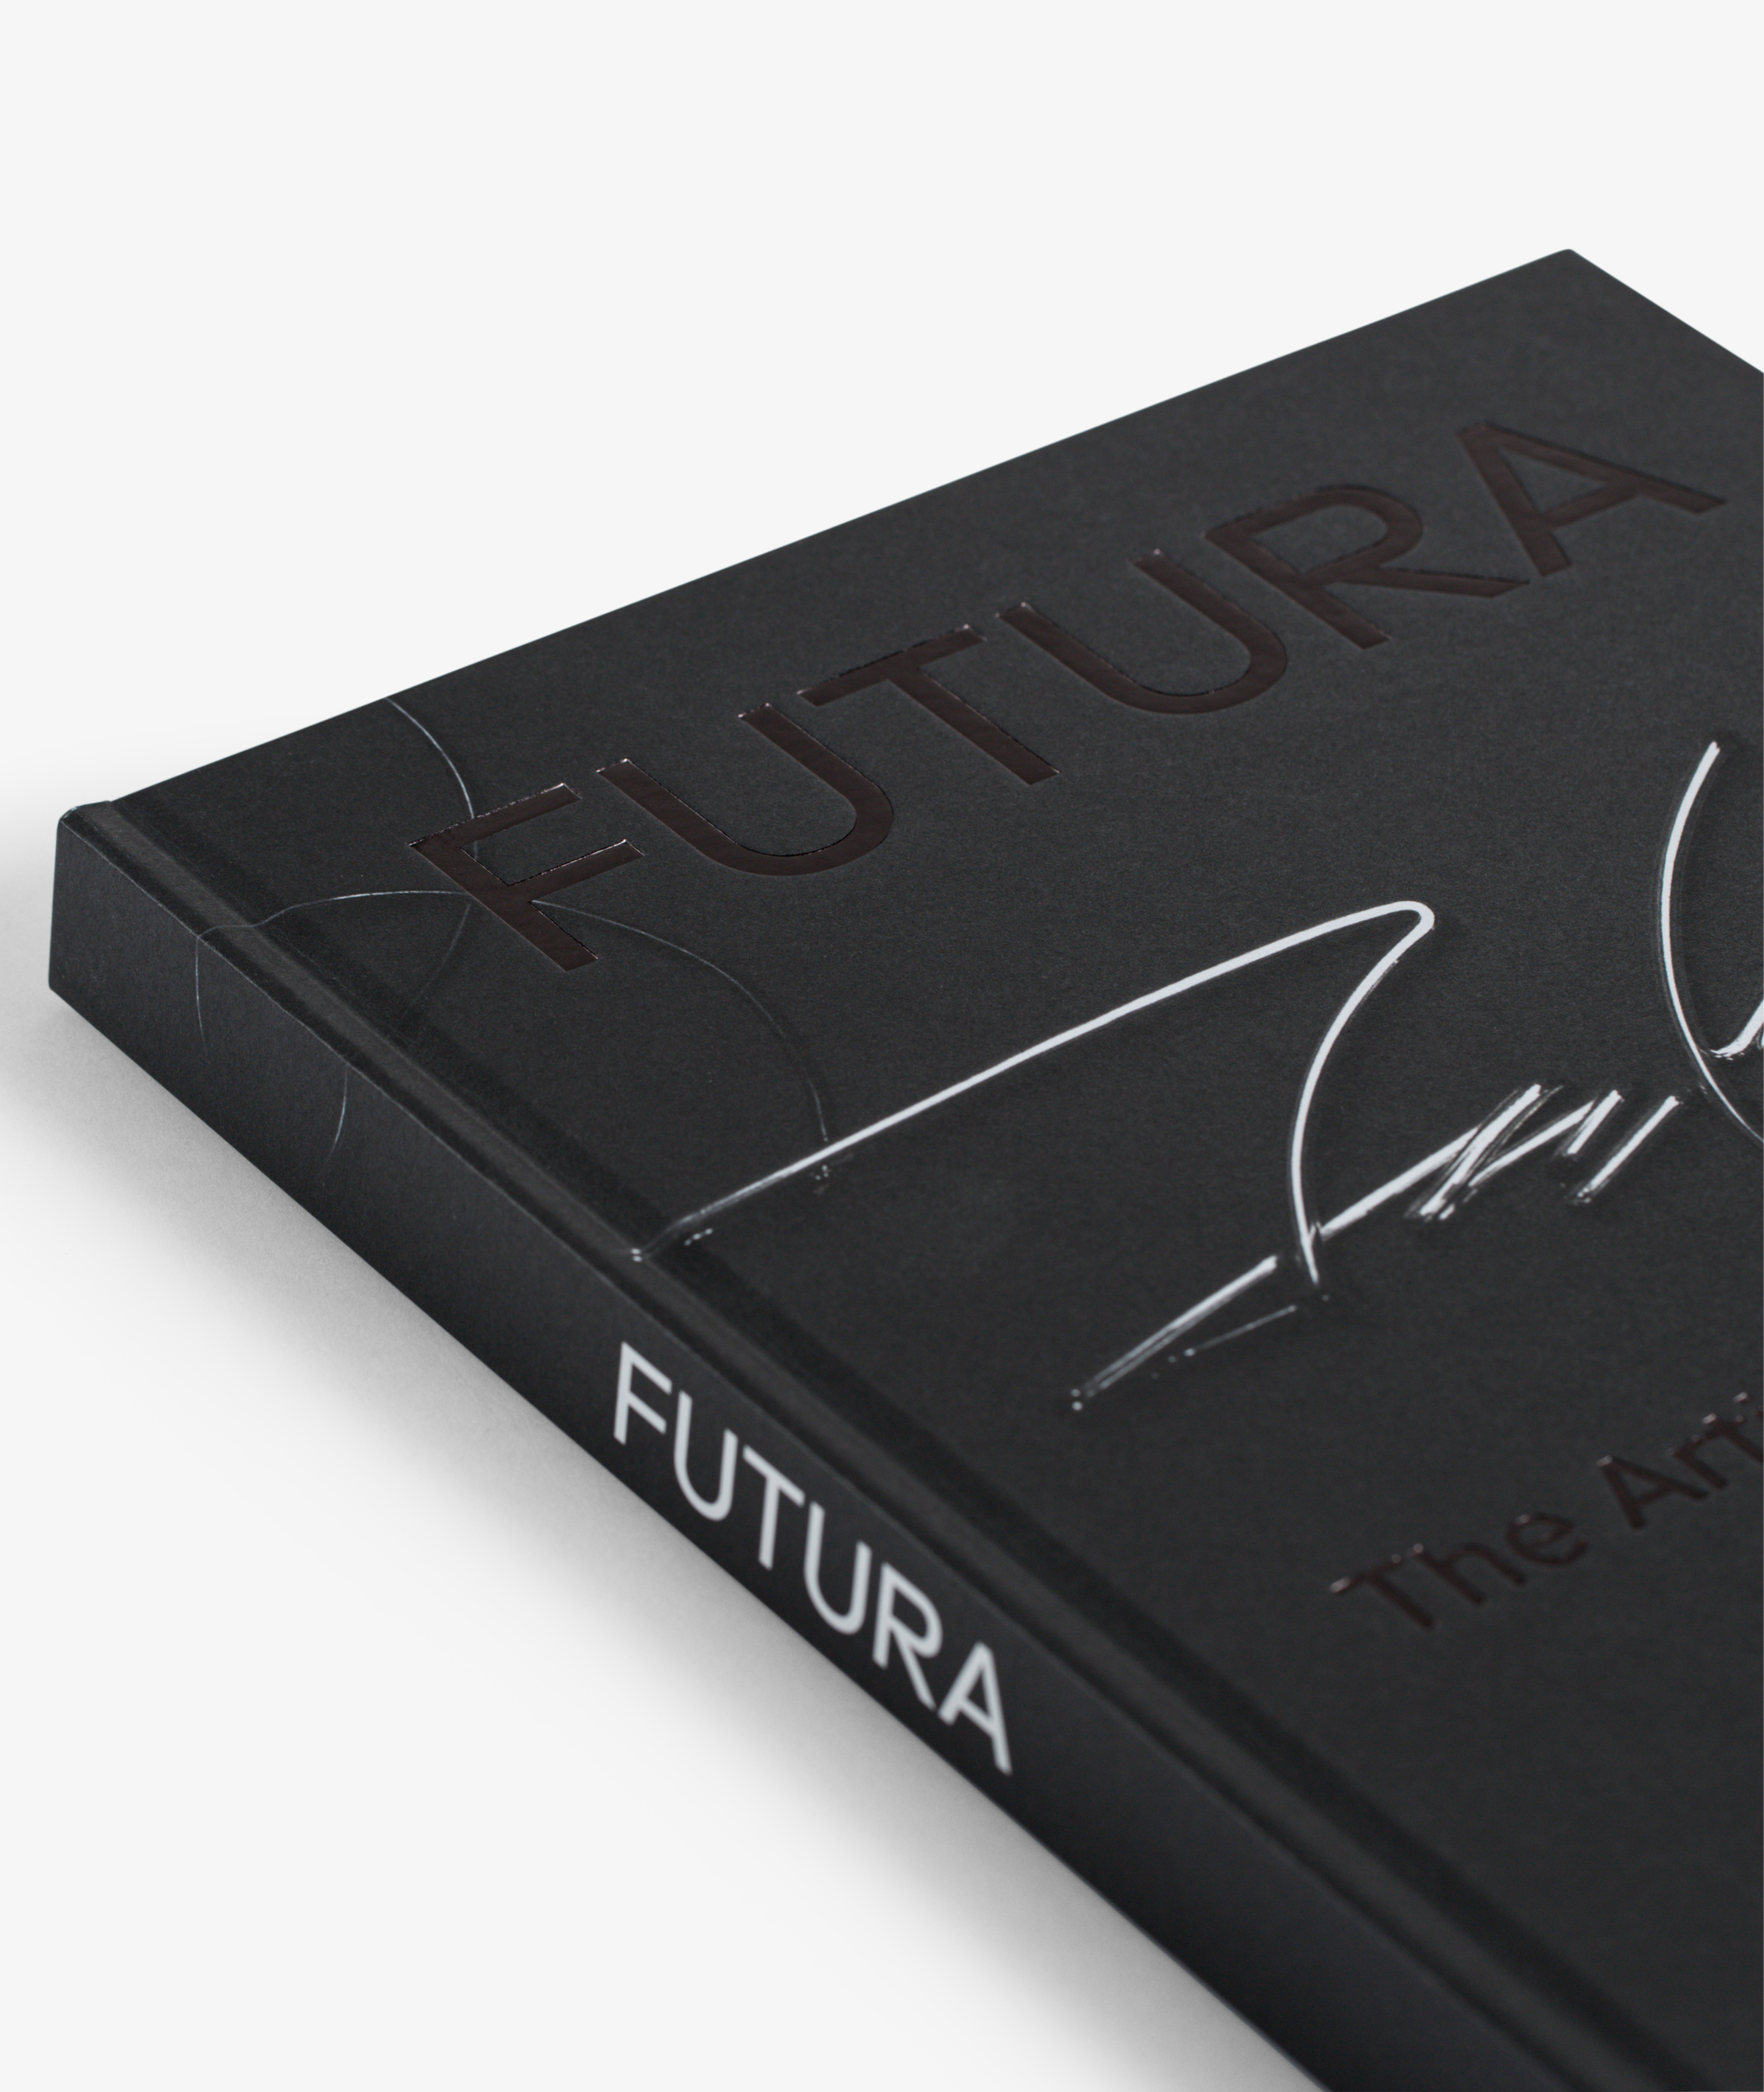 Rizzoli - Futura Deluxe Edition: The Artist's Monograph with